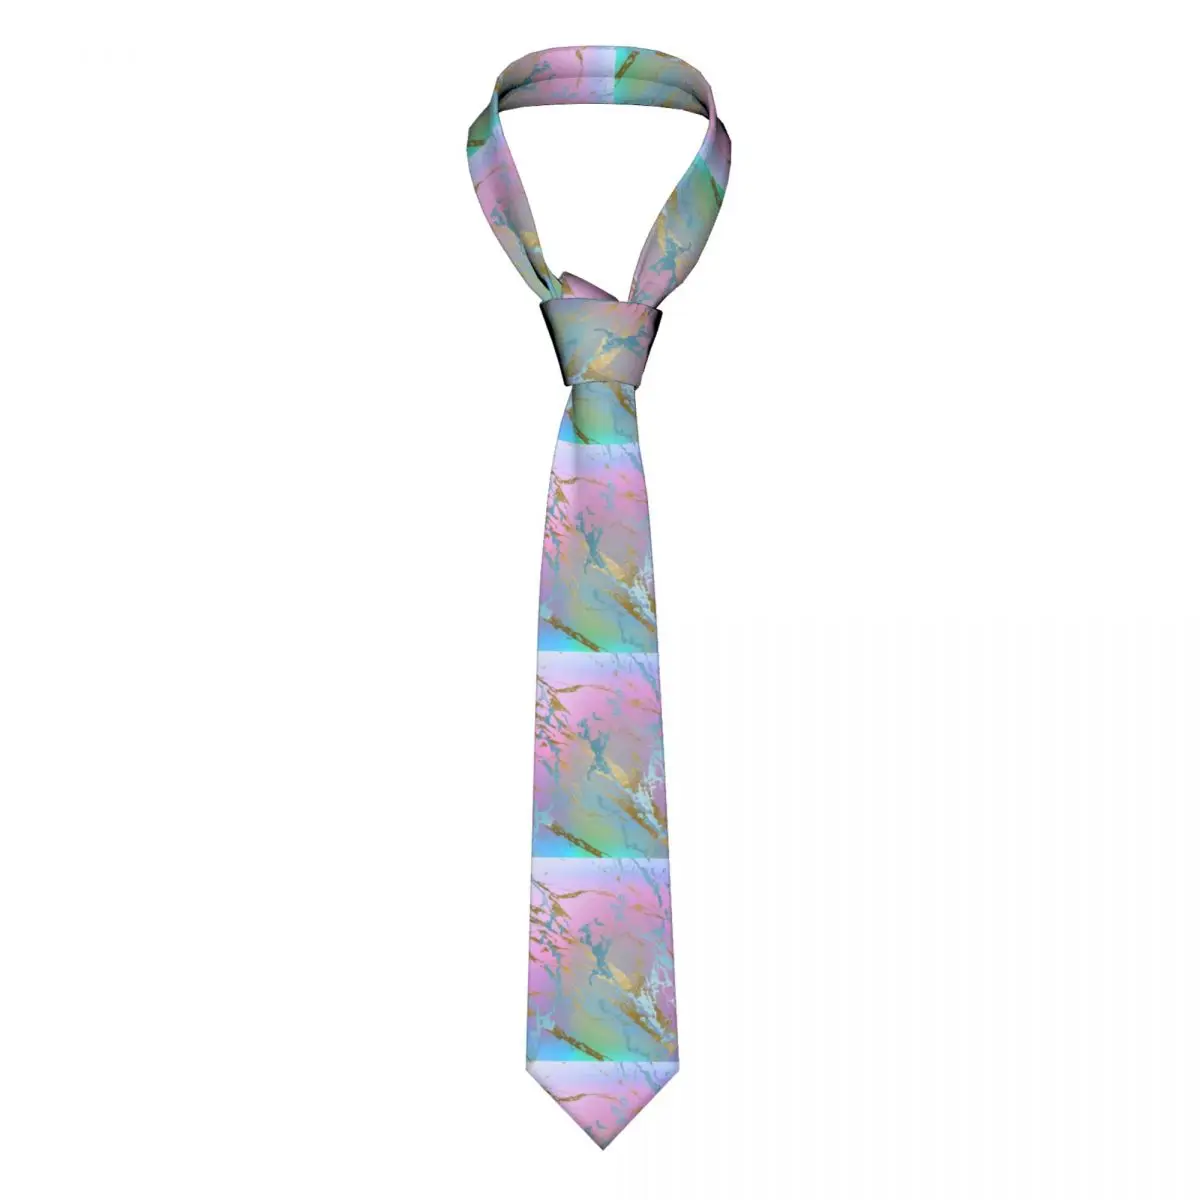 

Галстук Glod металлик для девушек, милый пастельный Омбре акварельный мужской галстук с узором, Подарочная рубашка, формальный галстук 8 см